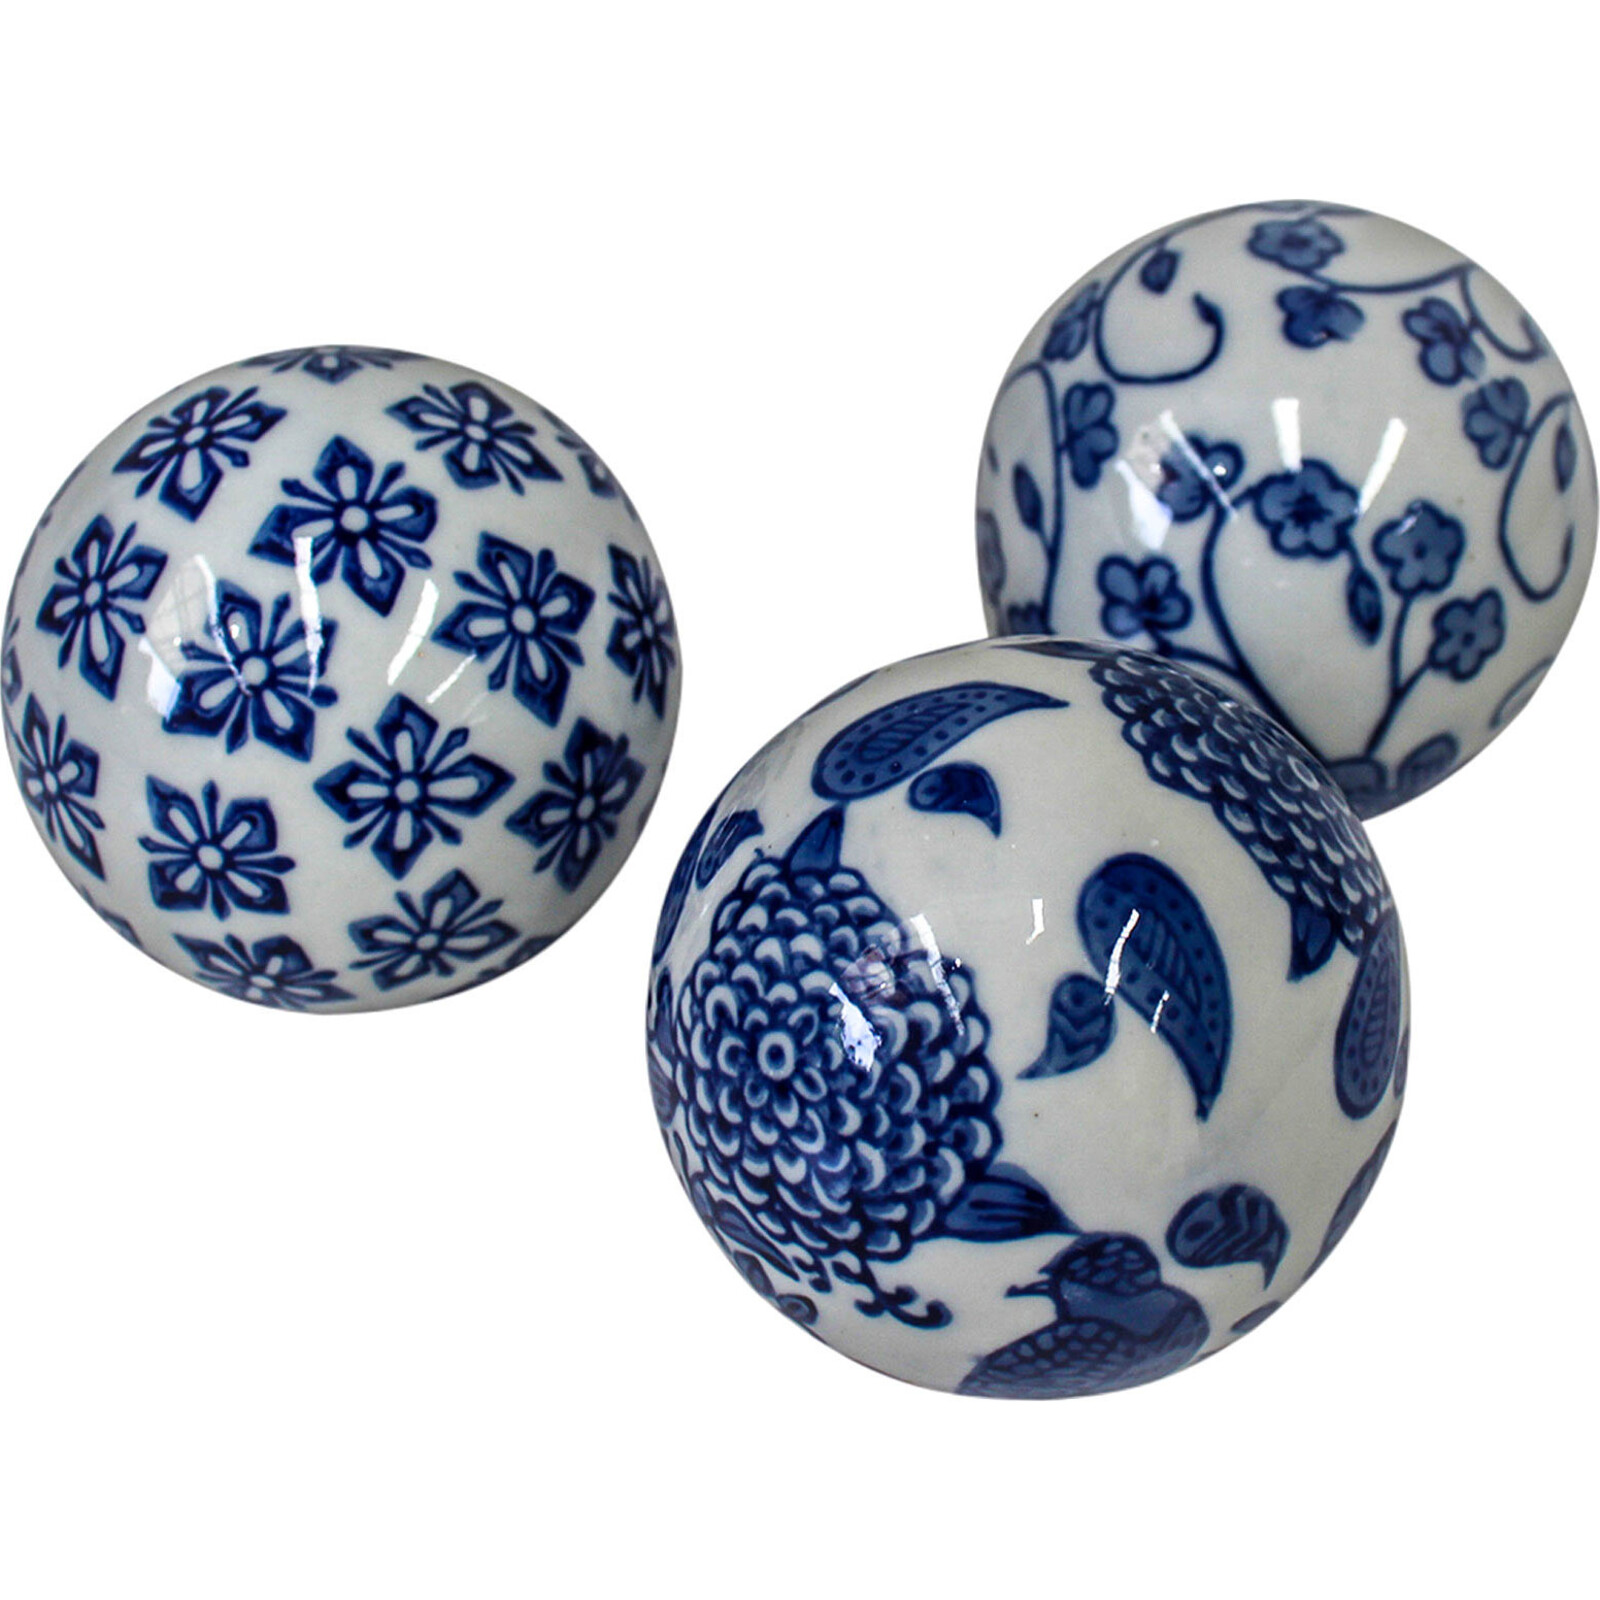 Ceramic Blue & White Balls Mix S/3